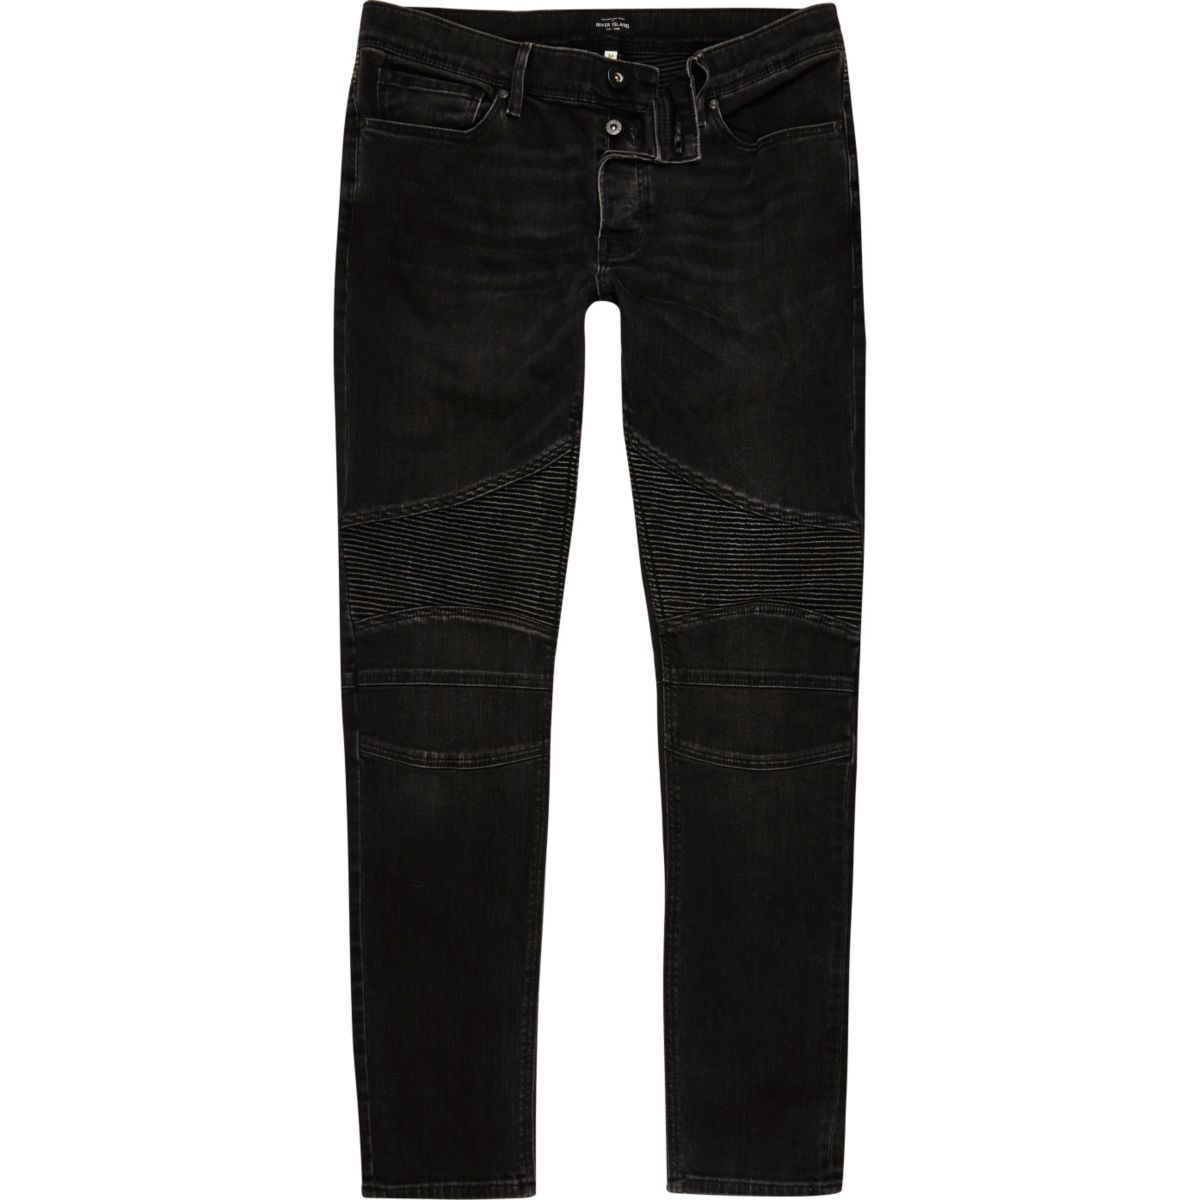 Black biker Sid skinny jeans - Jeans - Sale - men